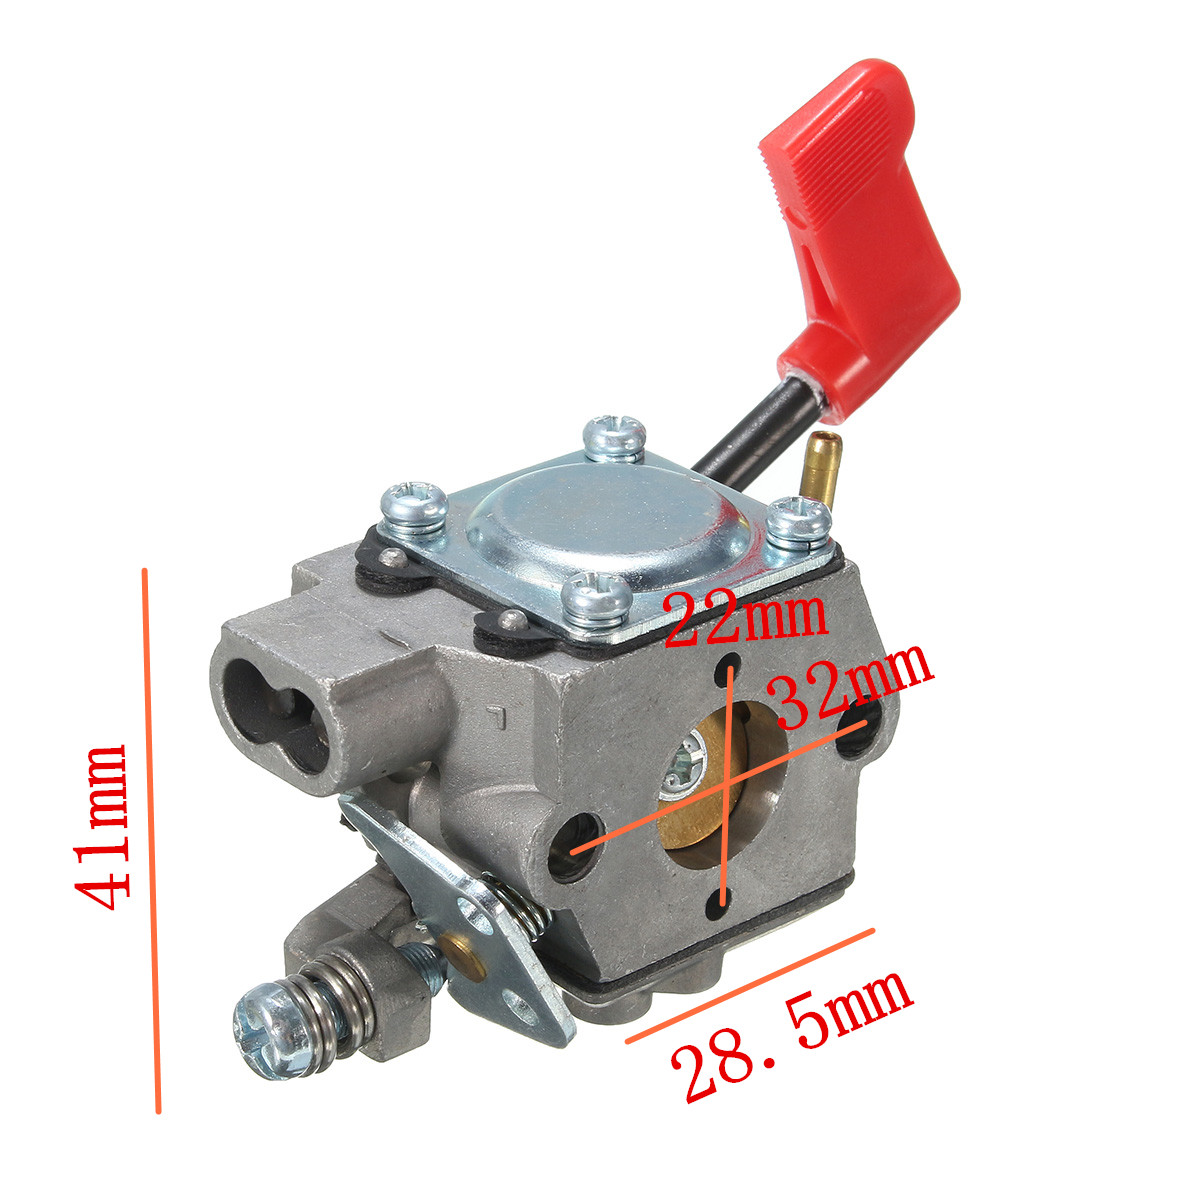 Carburateur Outil pour Craftsman Poulan 32cc gaz Trimmer Pole Pruner Walbro WT-628 